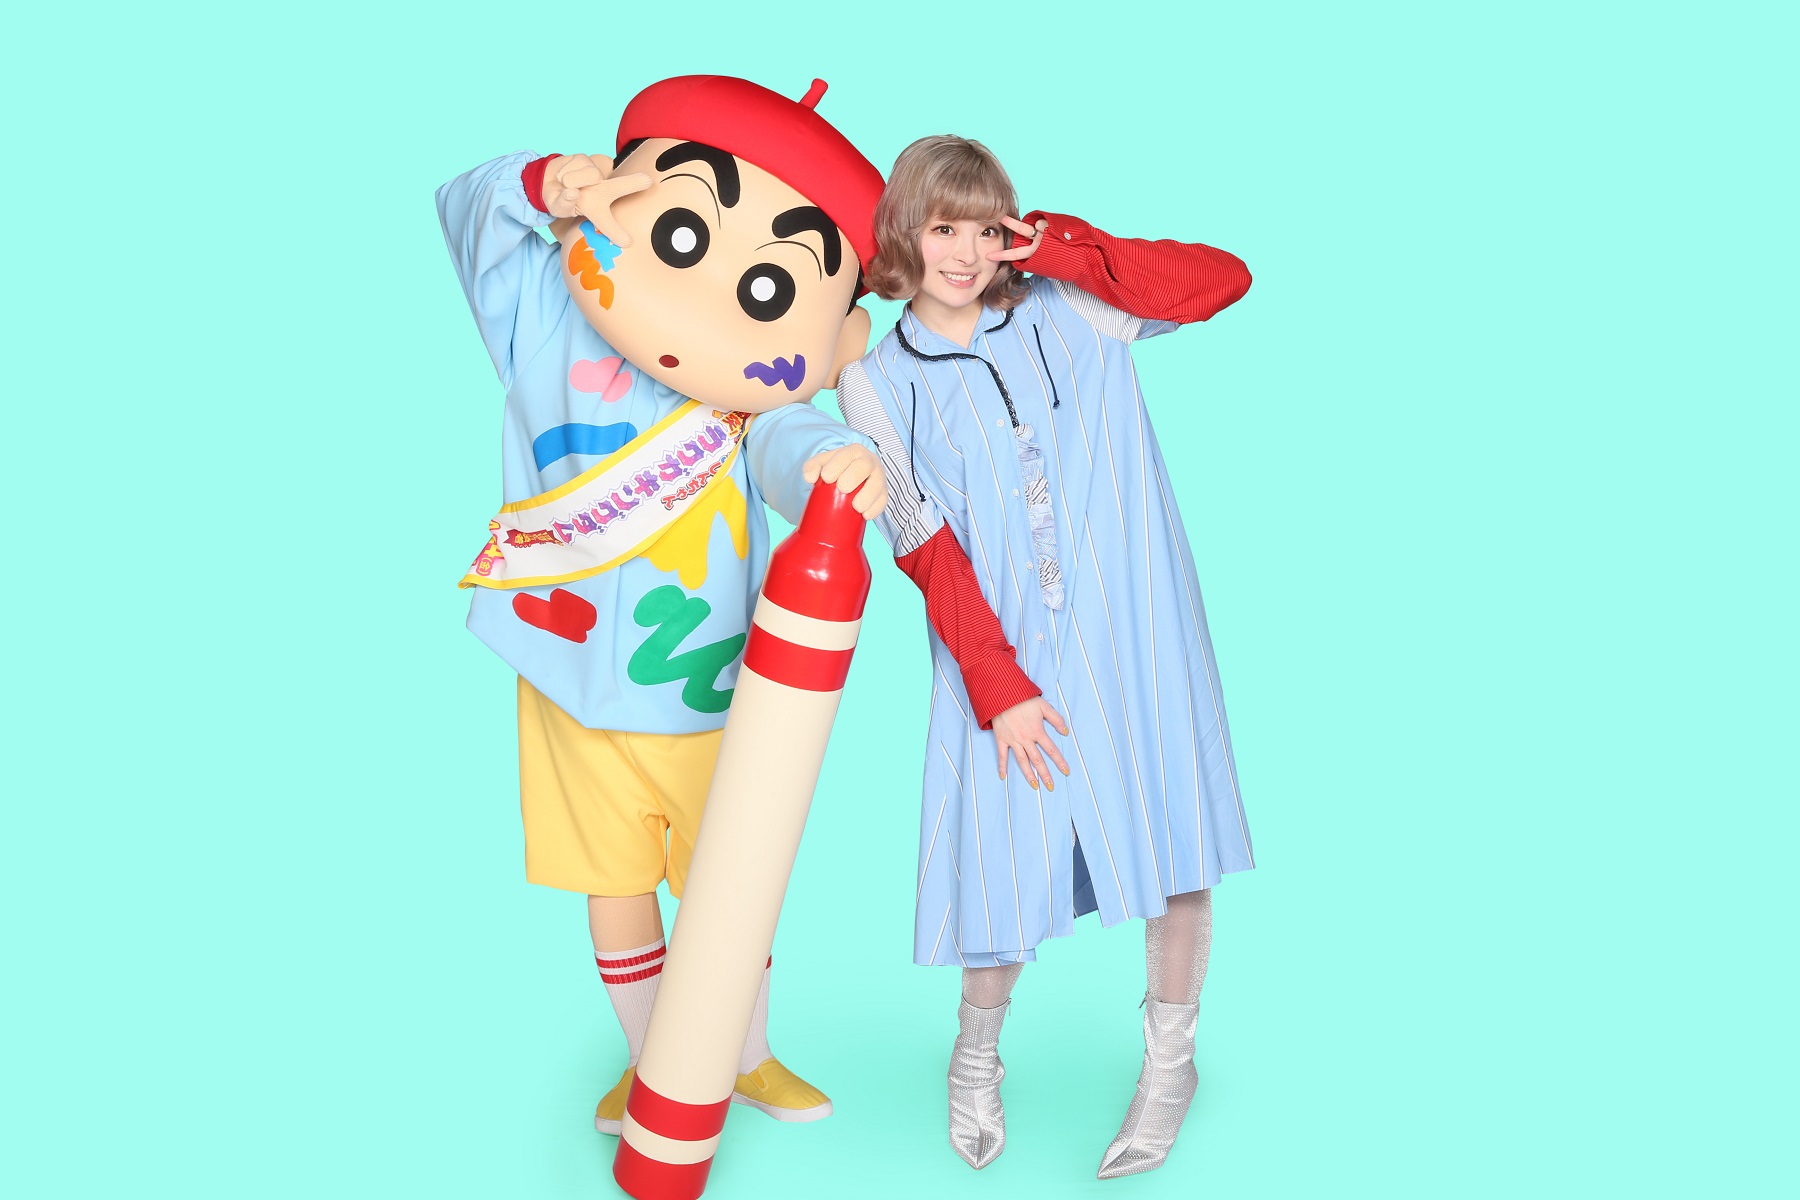 ケツメイシ 新曲 スーパースター がtvアニメ クレヨンしんちゃん の新主題歌に決定 moshi moshi nippon もしもしにっぽん